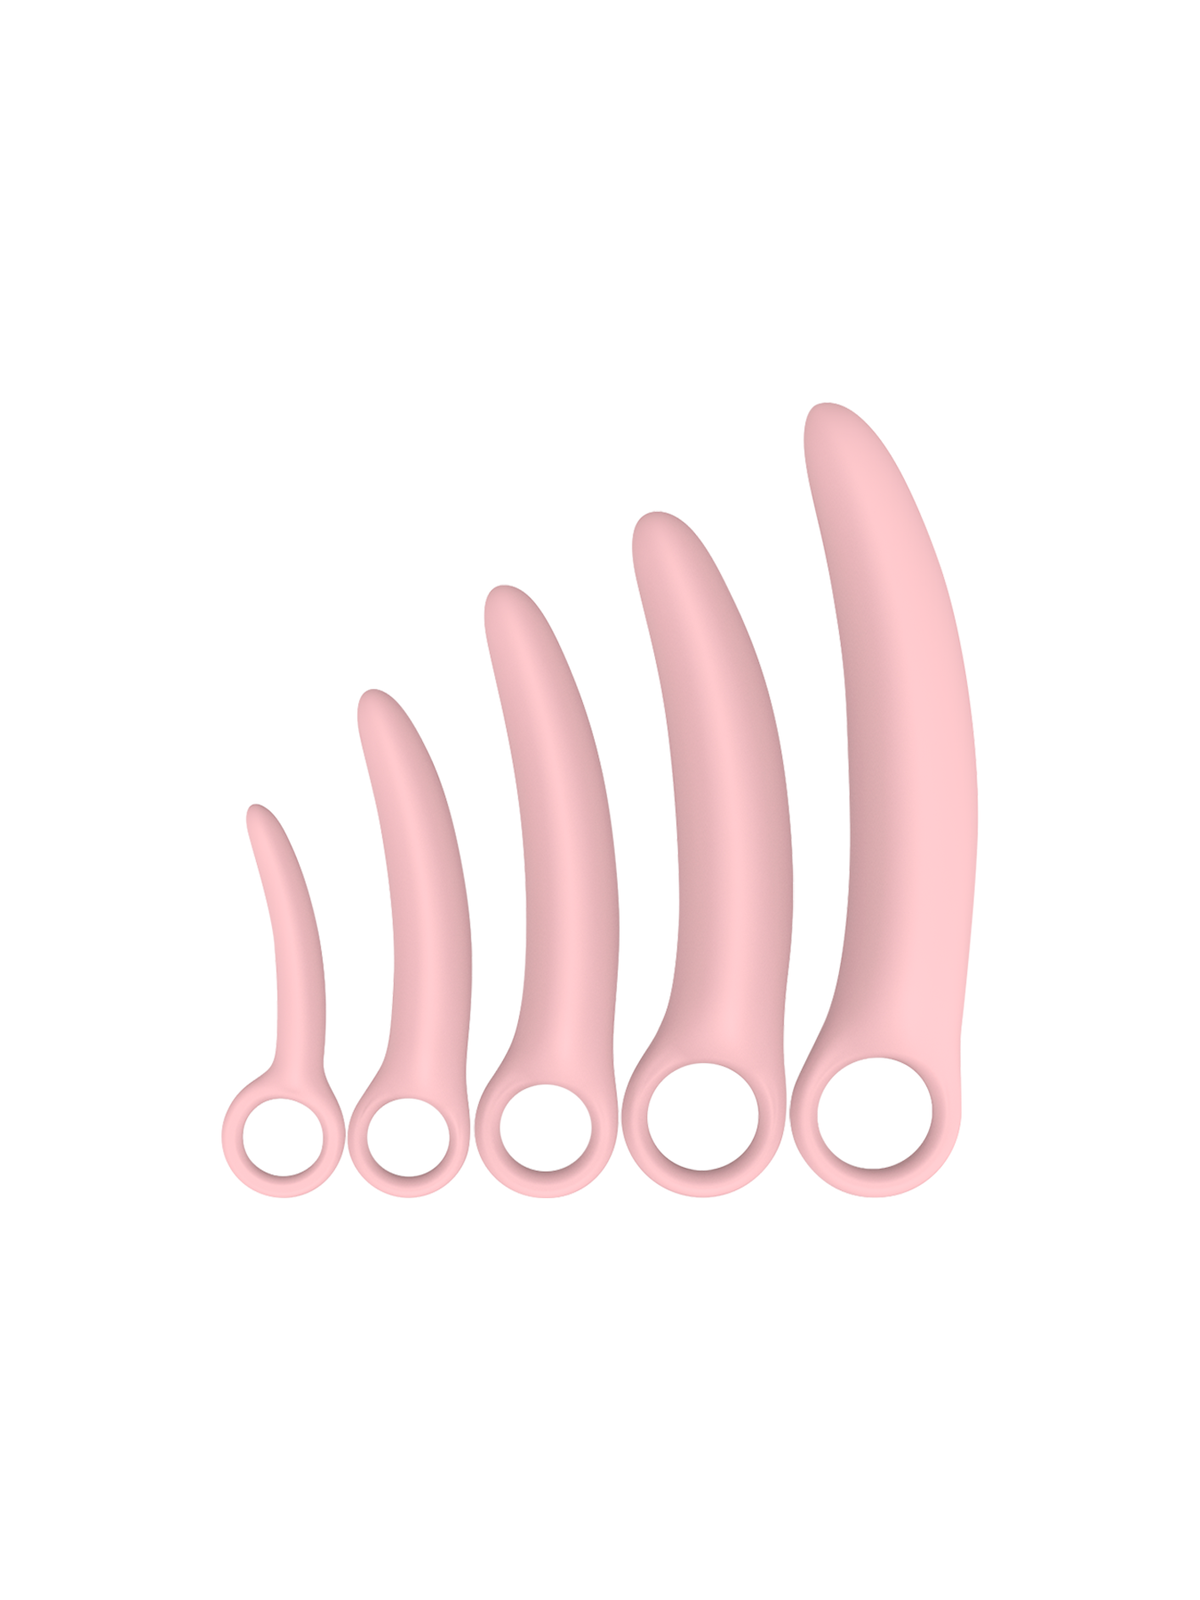 Intimichic Set 5 Piezas Dilatador Silicona - Comprar Dilatador vaginal Intimichic - Dilatadores vaginales (1)